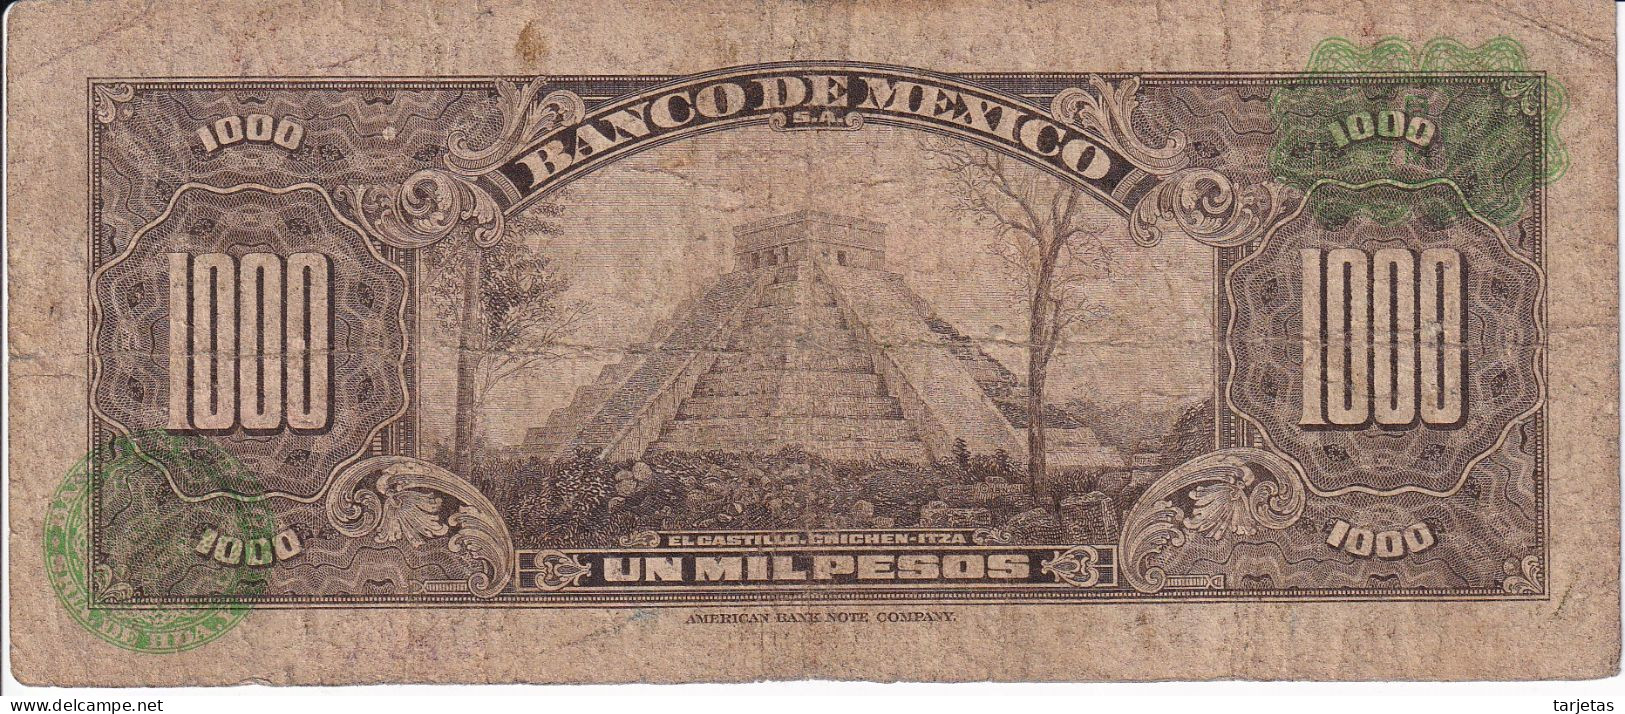 BILLETE DE MEXICO DE 1000 PESOS DEL 18 DE FEBRERO DE 1977 DIFERENTES FIRMAS (BANKNOTE) - Mexiko